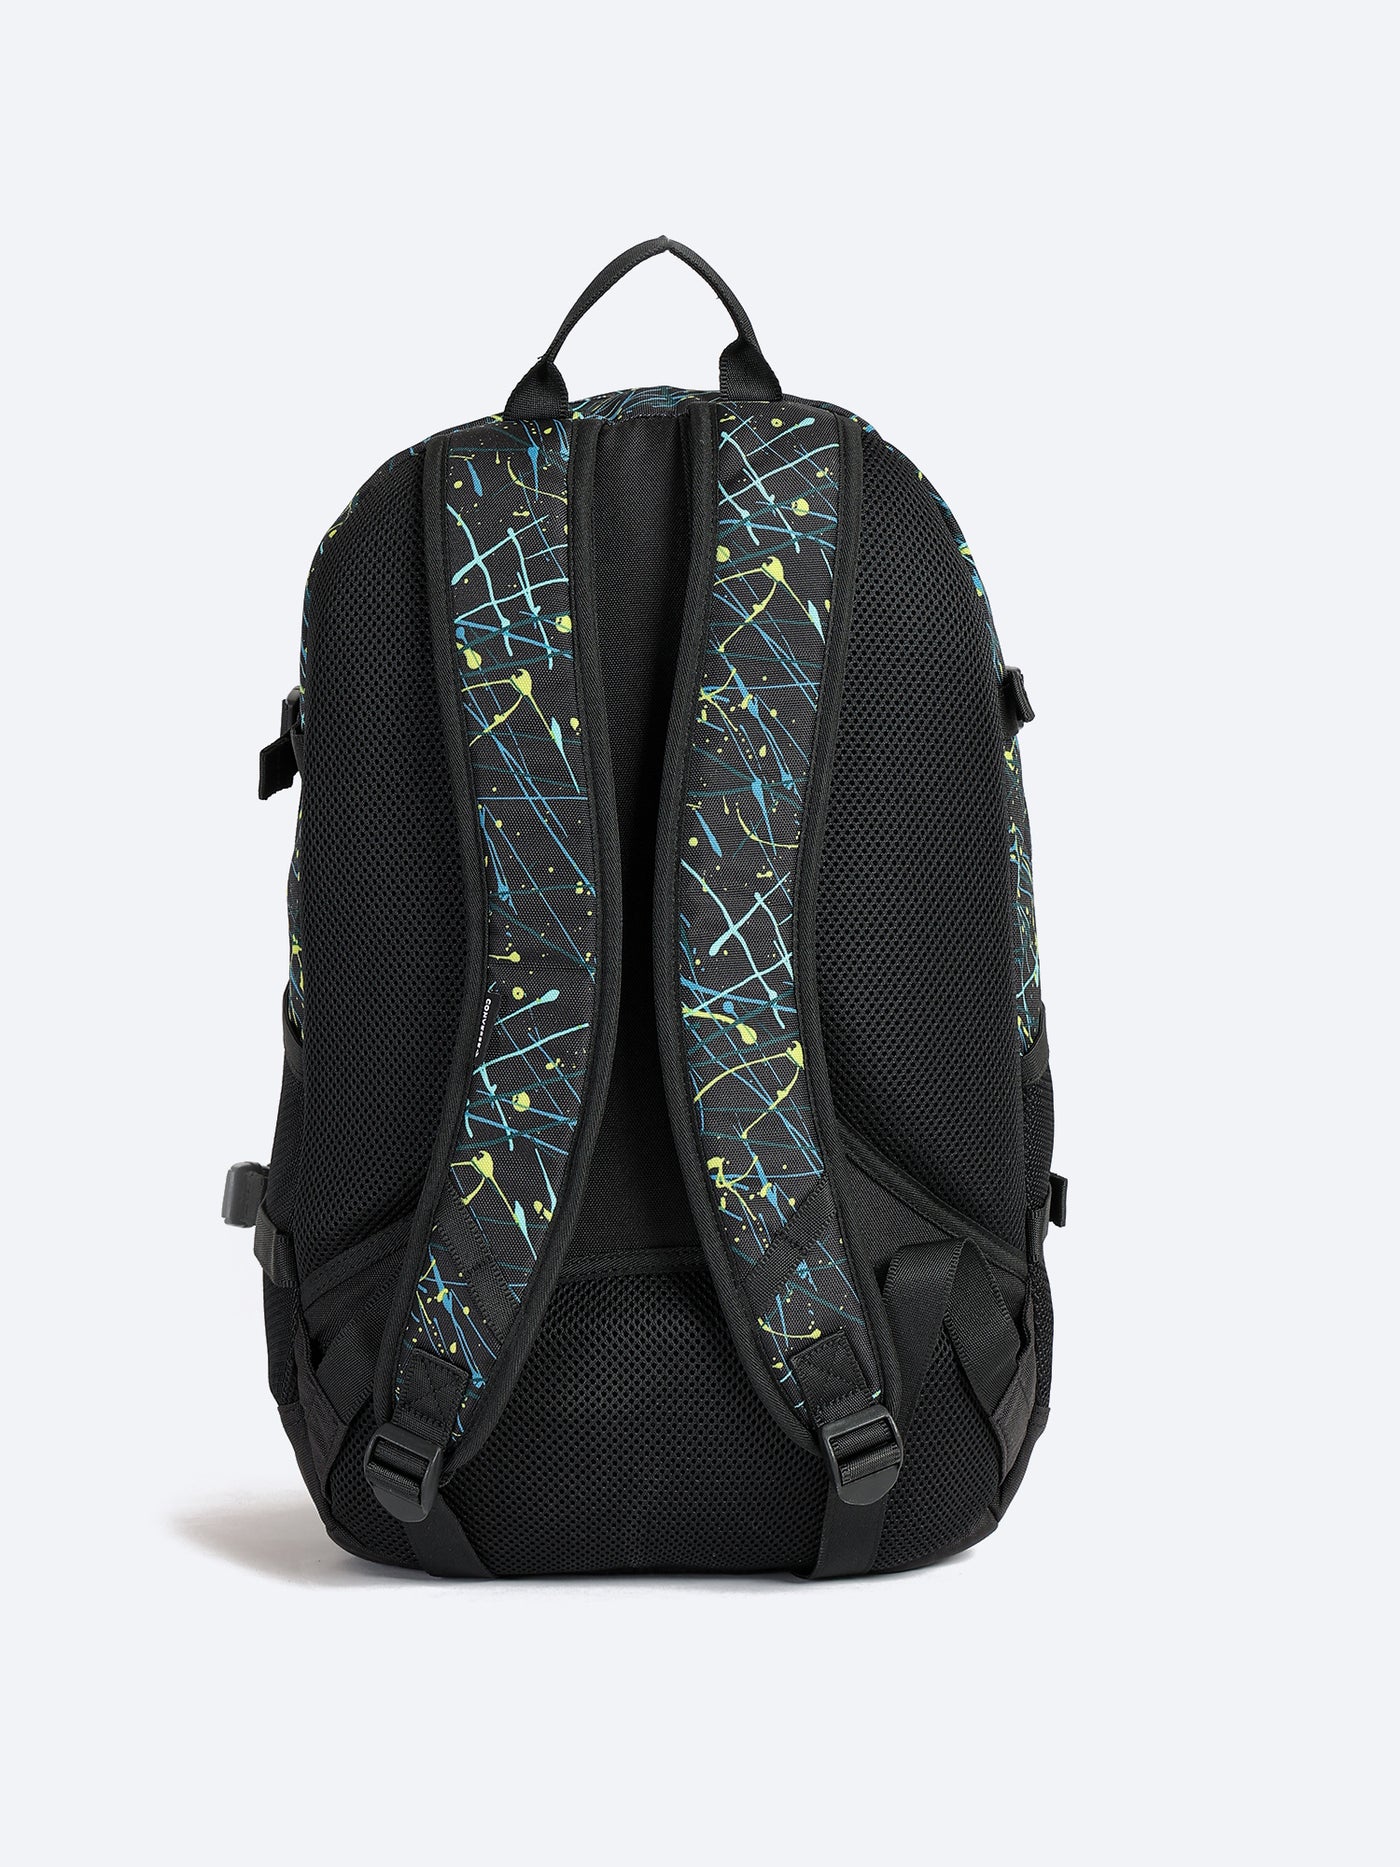 Unisex Backpack - Straight Edge - Paint Splatter